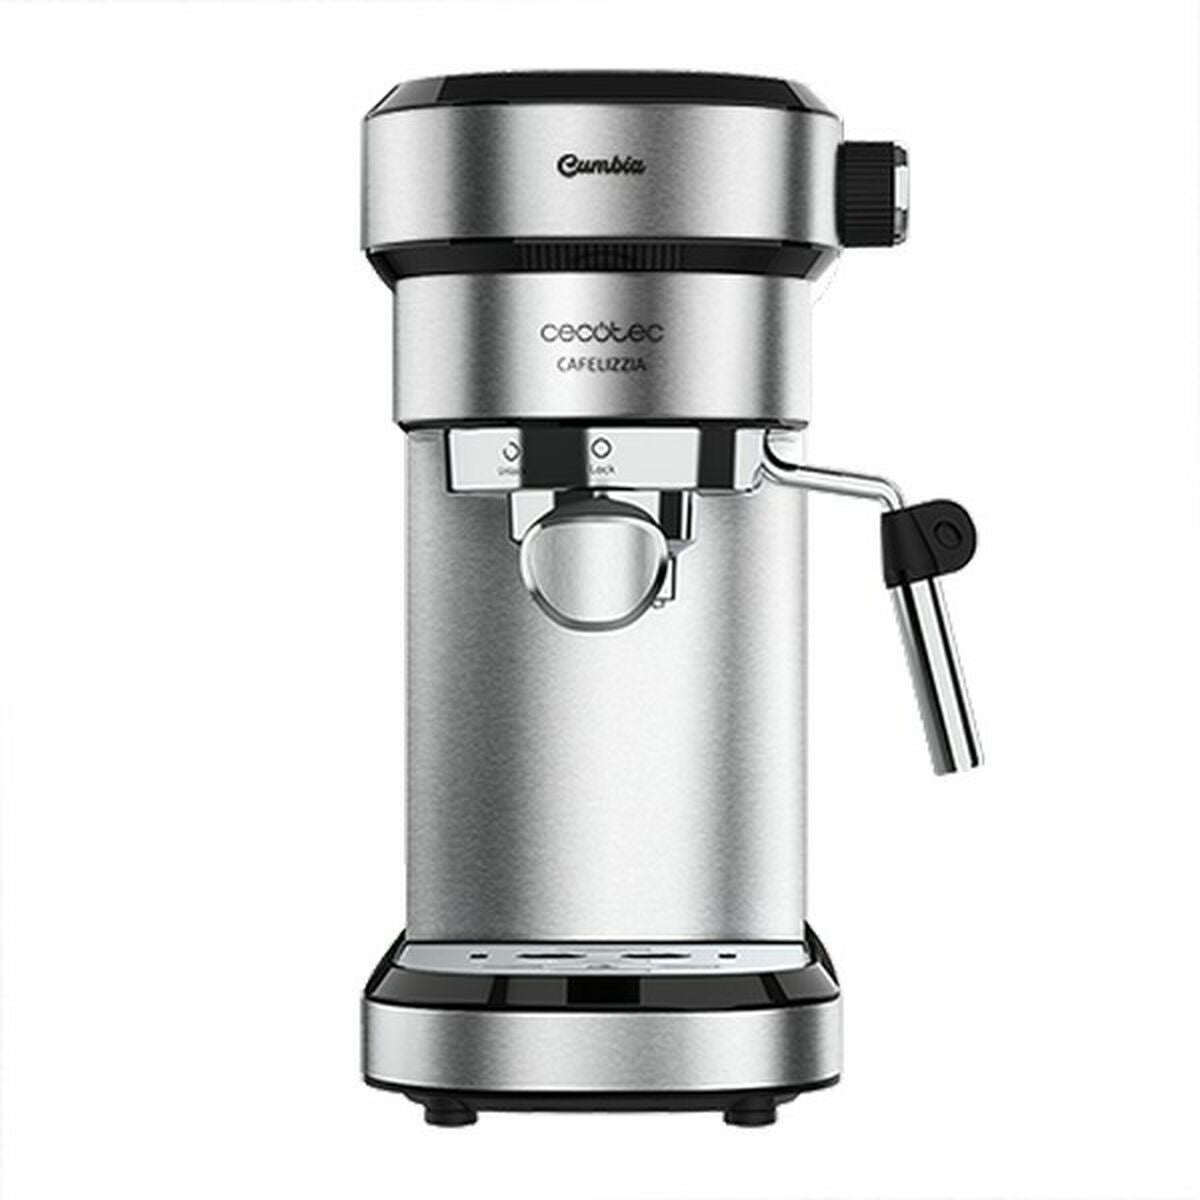 Ekspress Manuell Kaffemaskin Cecotec Cafelizzia 790 1,2 L 1350W Stål 1,2 L